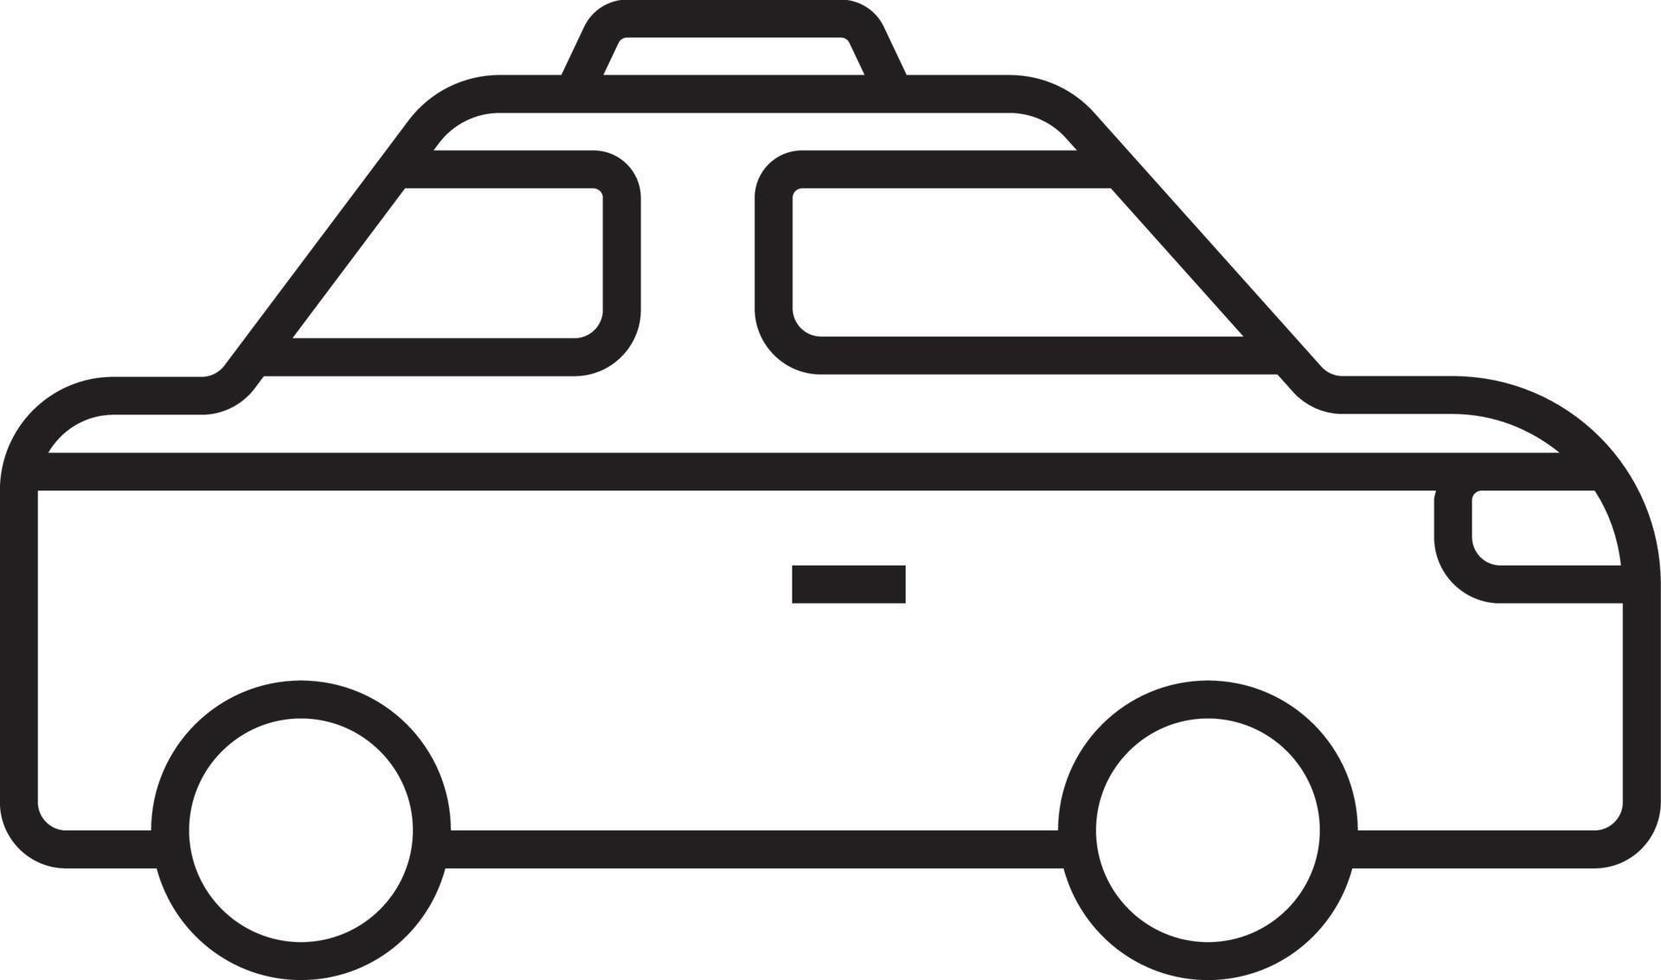 Taxi-Transport-Symbol Menschen-Symbole mit schwarzem Umriss-Stil. fahrzeug, symbol, transport, linie, umriss, bahnhof, reise, automobil, bearbeitbar, piktogramm, isoliert, flach. Vektor-Illustration vektor